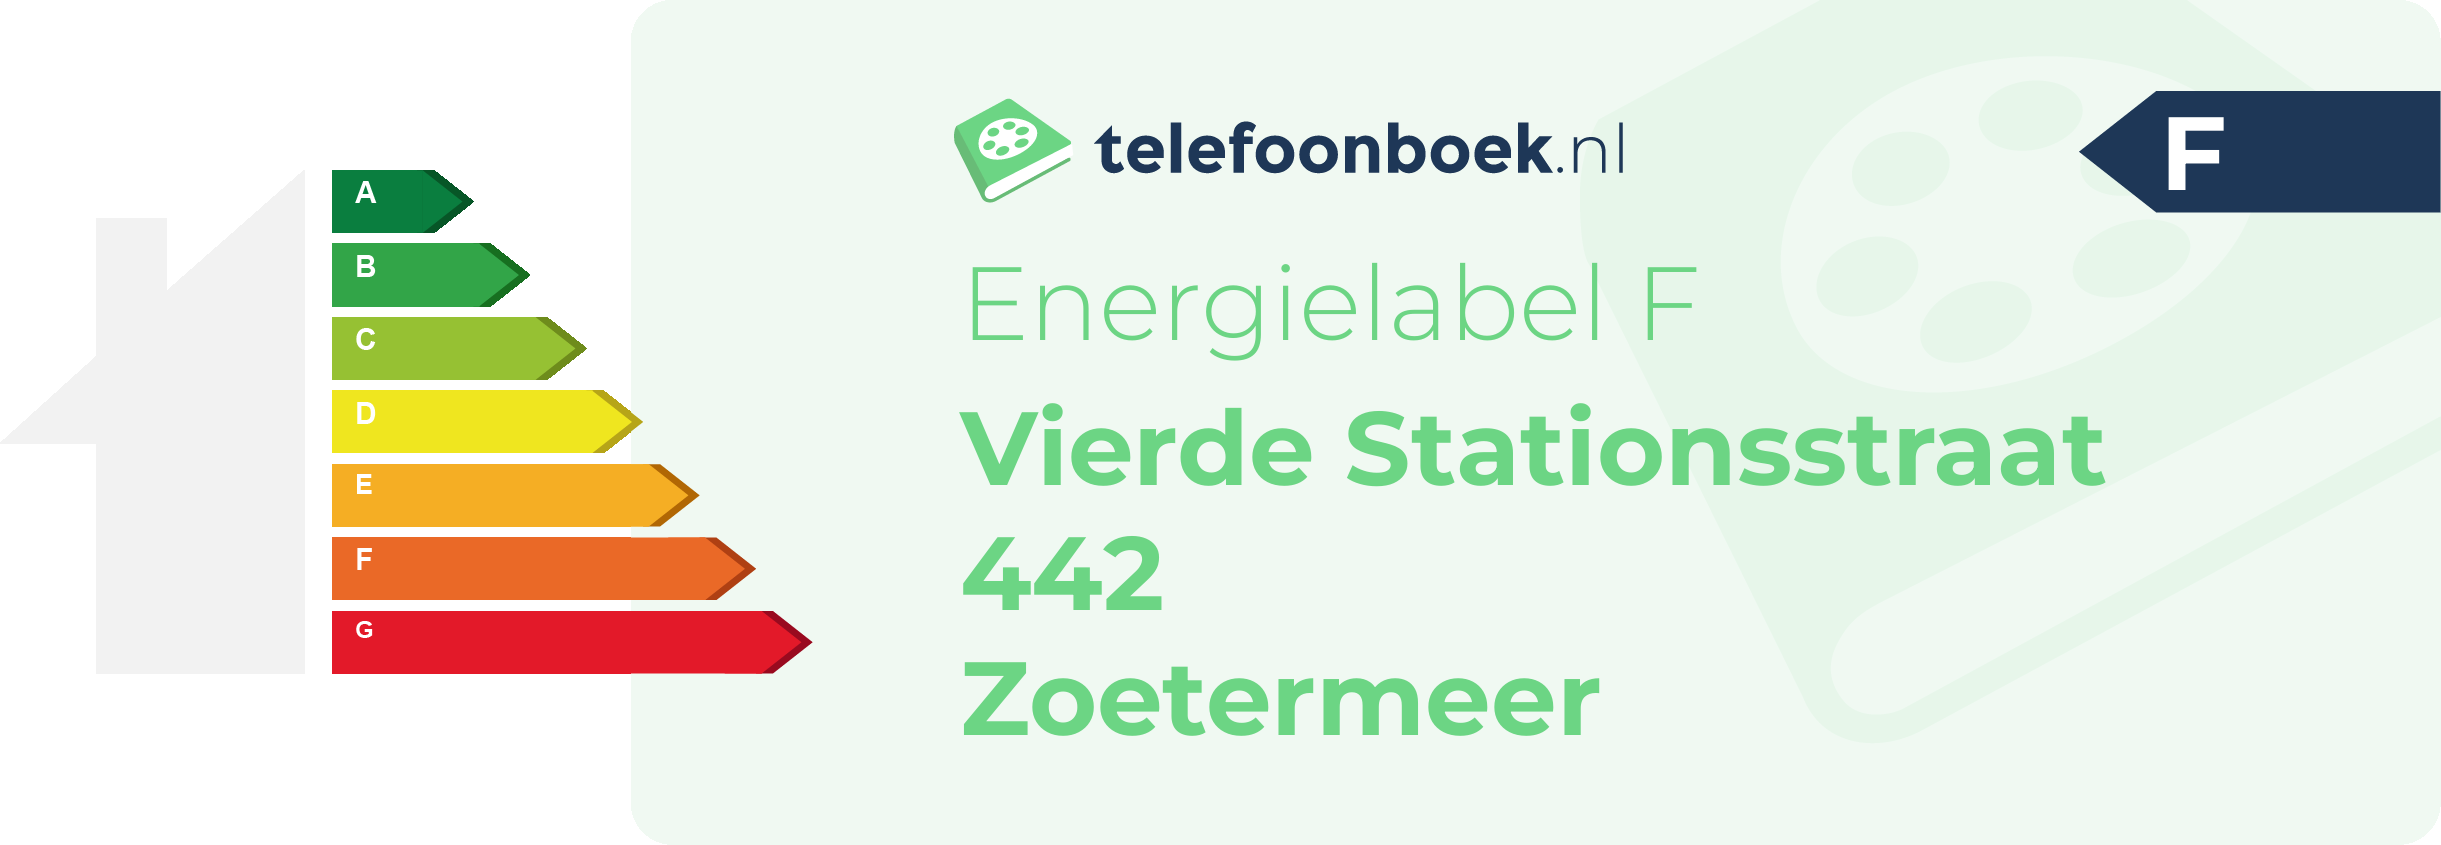 Energielabel Vierde Stationsstraat 442 Zoetermeer